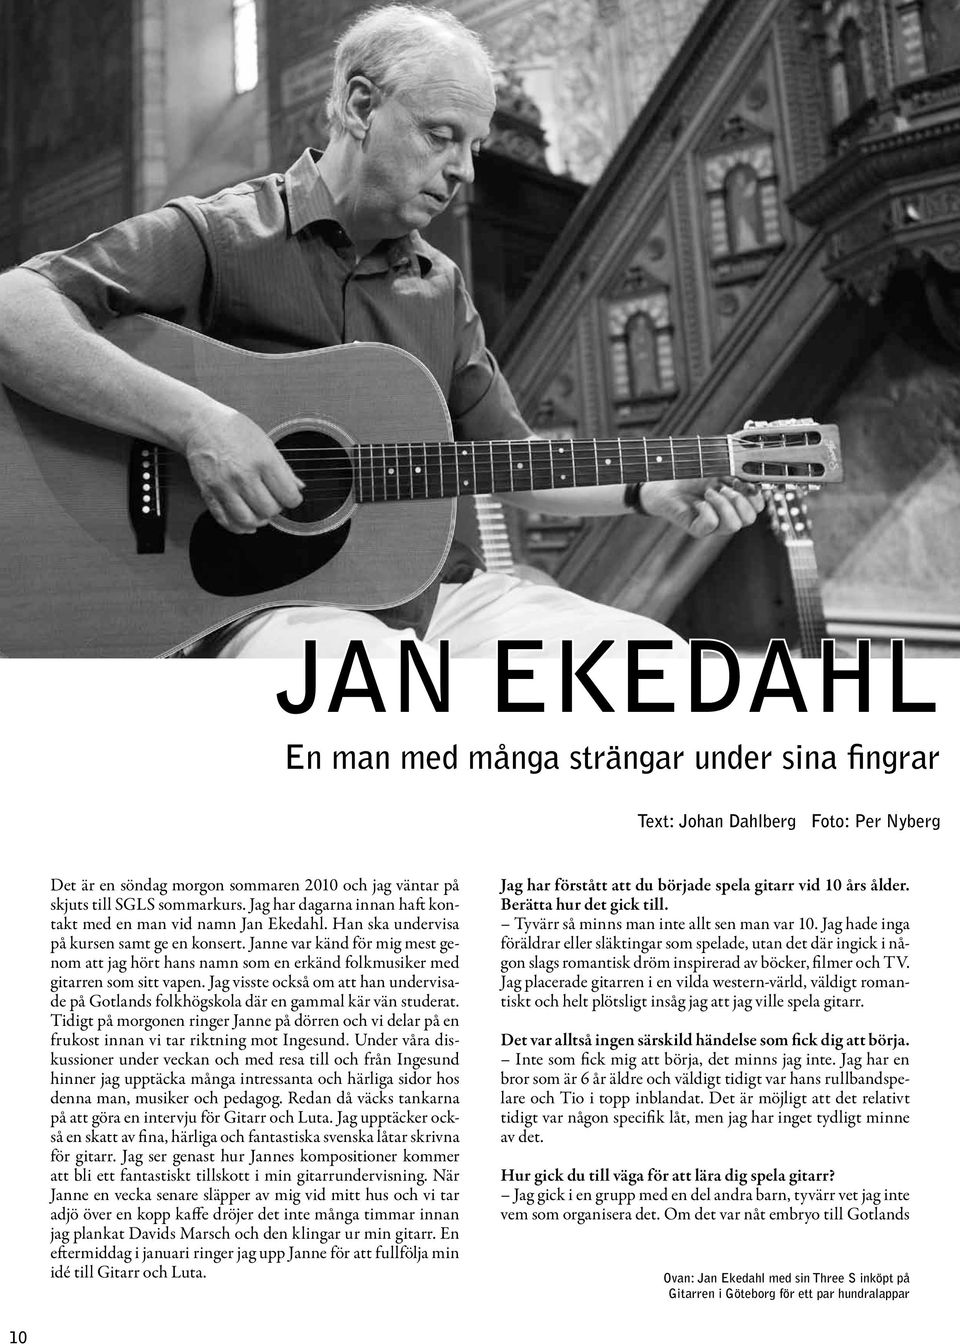 Janne var känd för mig mest genom att jag hört hans namn som en erkänd folkmusiker med gitarren som sitt vapen.